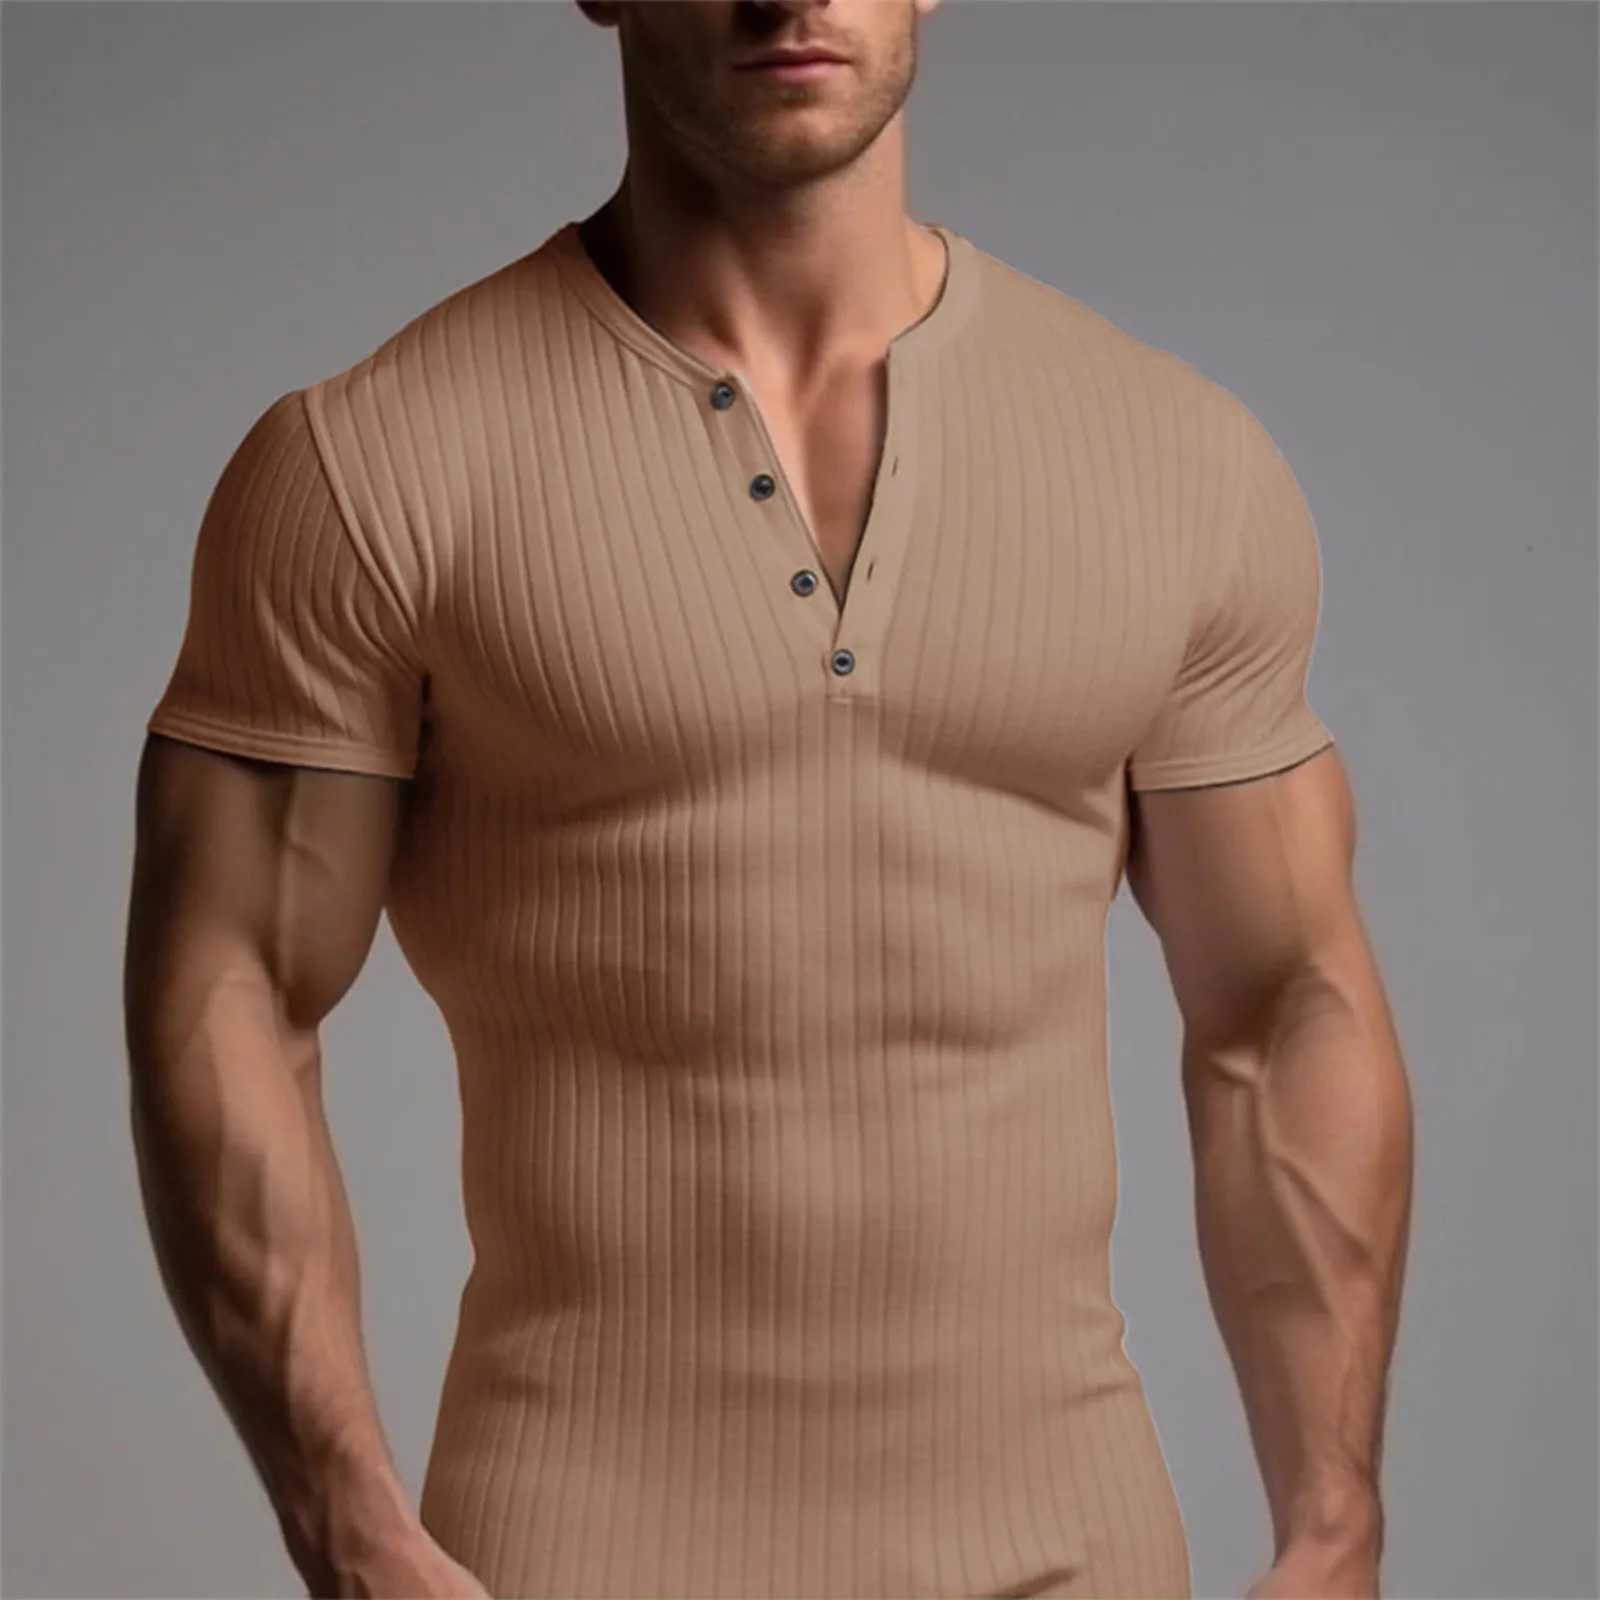 Camisas casuais masculinas Camiseta de t-shirt de verão Roupas de fitness Roupos de fitness músculos Slim Fit Manga curta T-shirt colar de gola em V do colarinho casual 2449